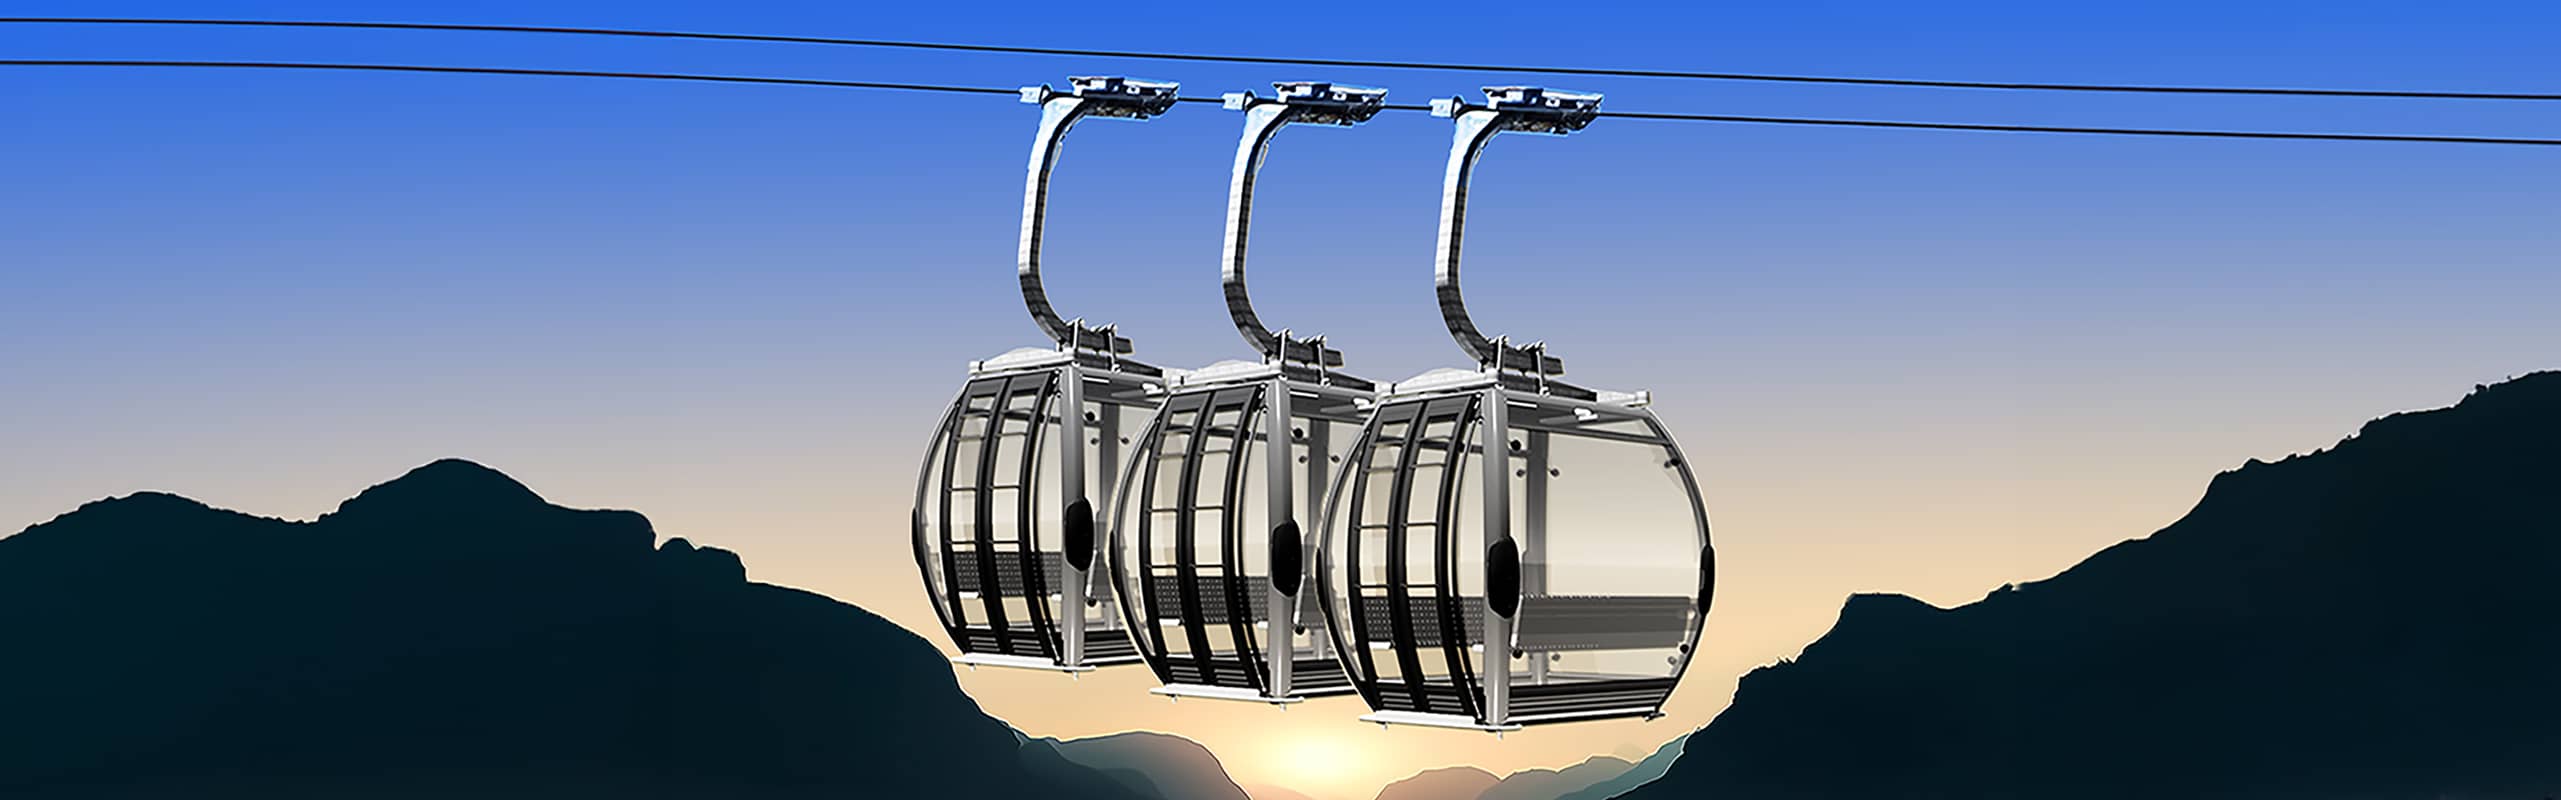 Image of pulse gondola